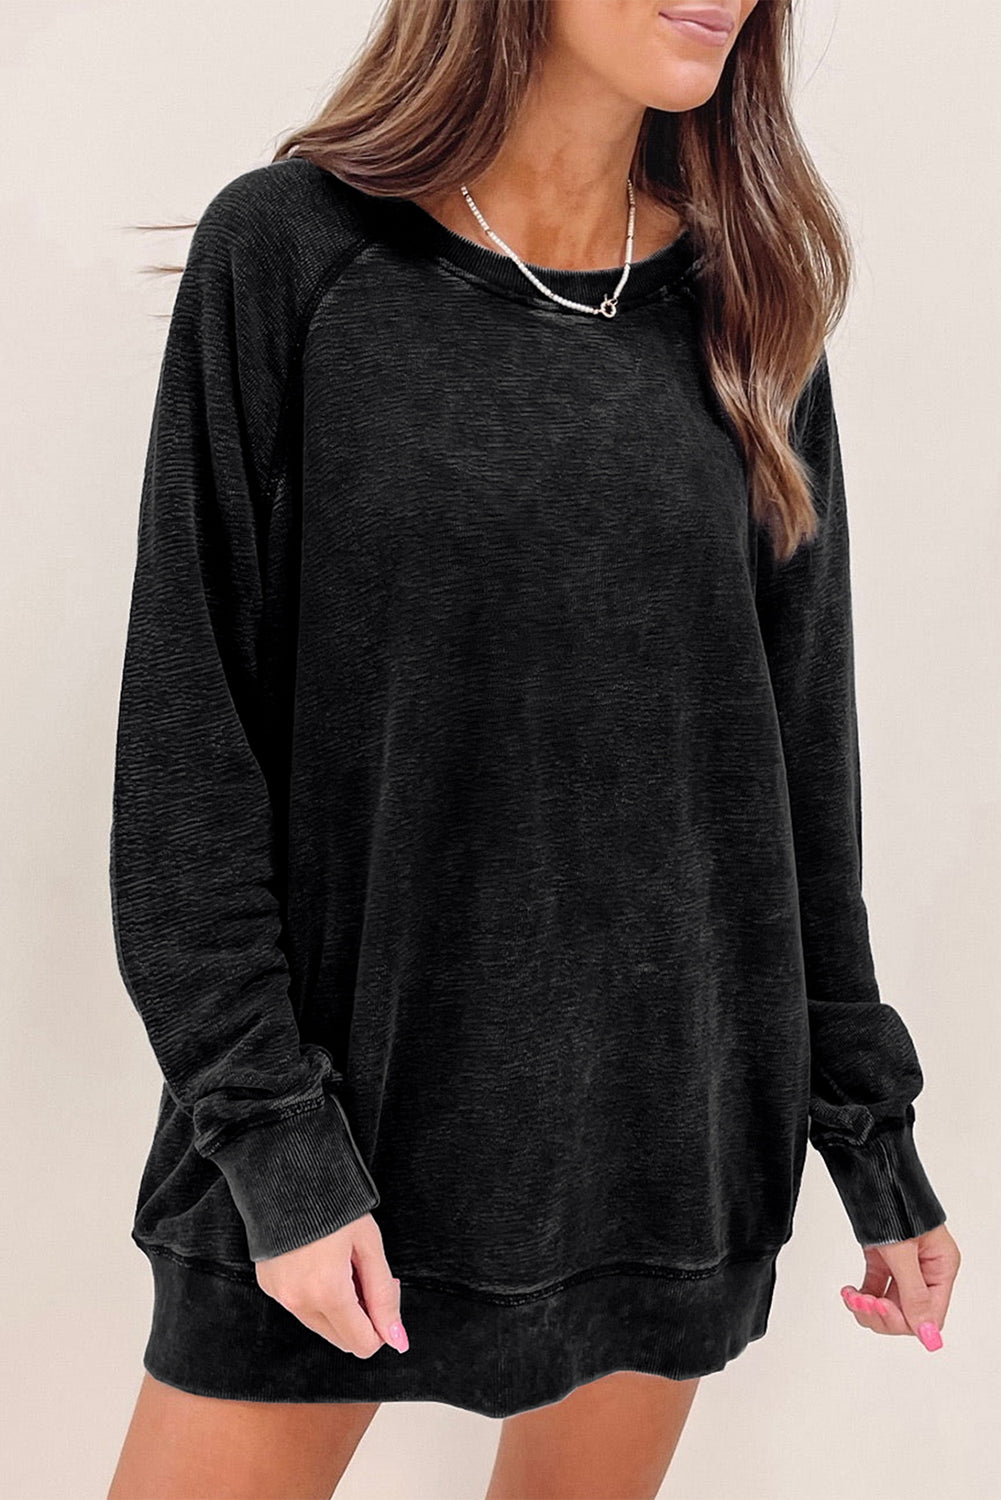 Schwarzes, übergroßes Pullover-Sweatshirt mit Mineralwaschung